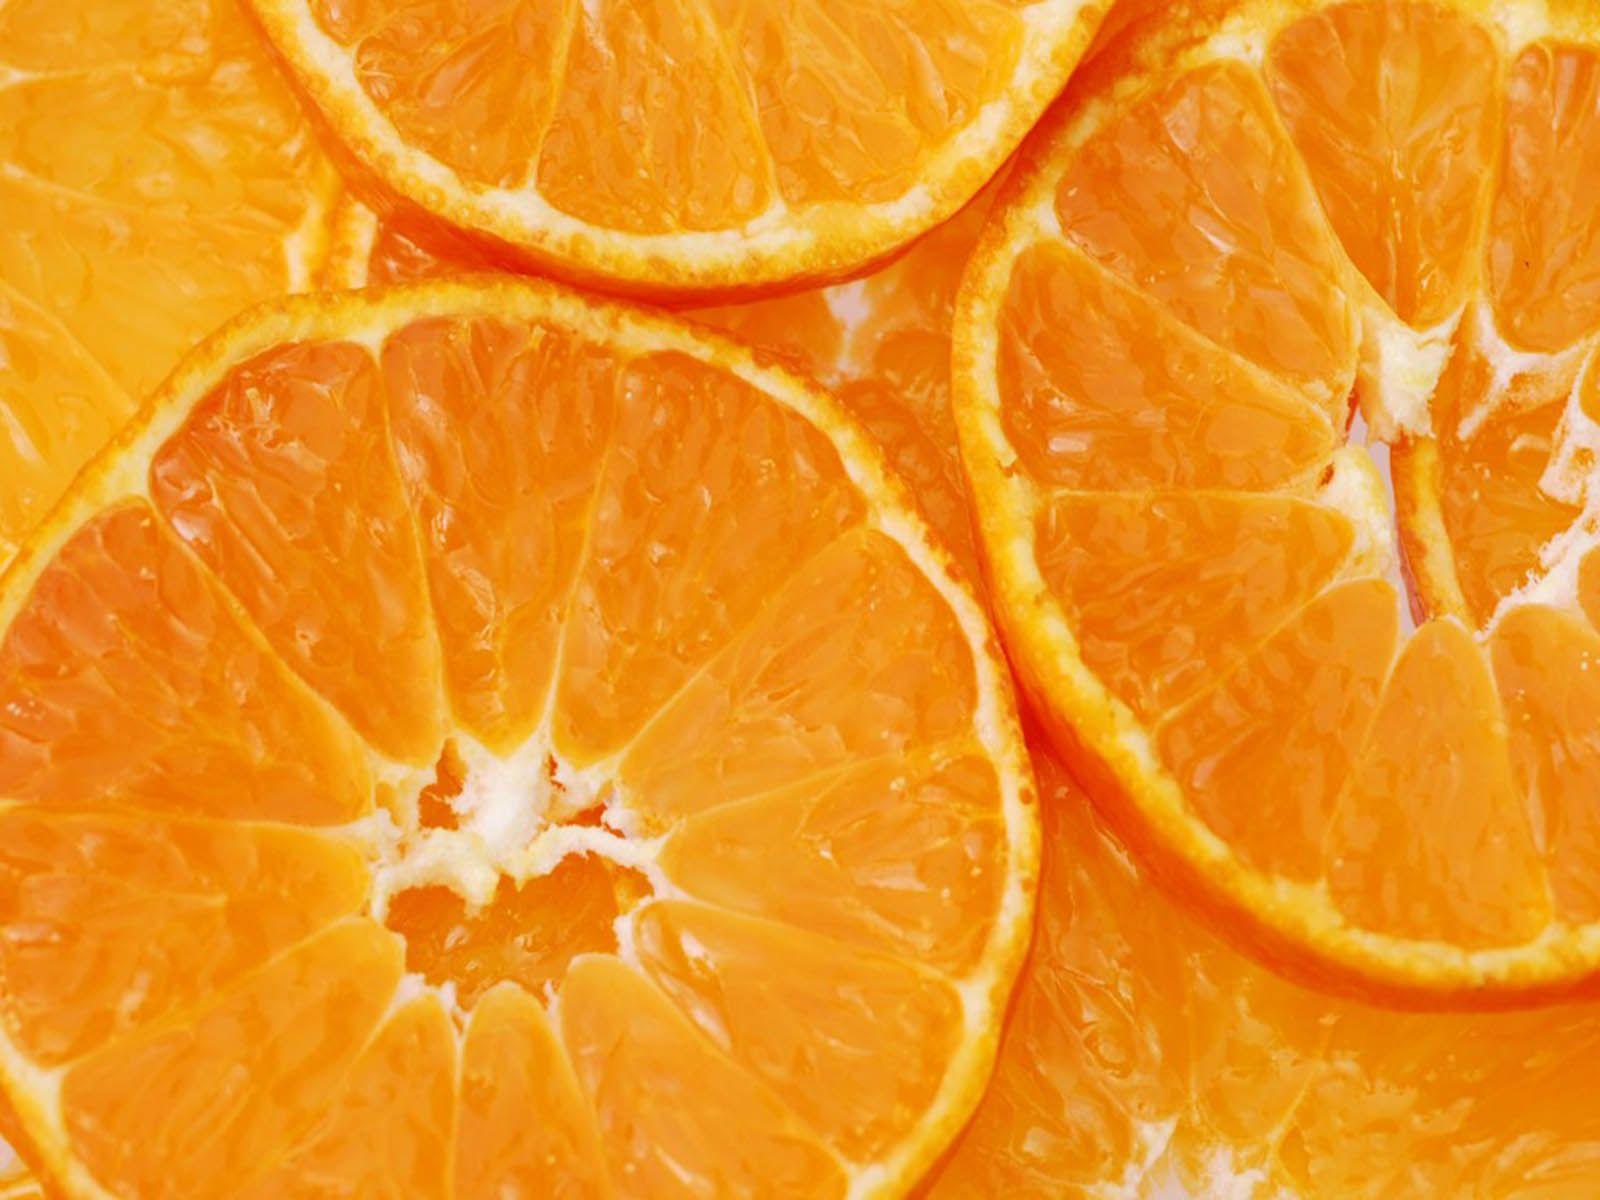 Orange Fruit Wallpaper